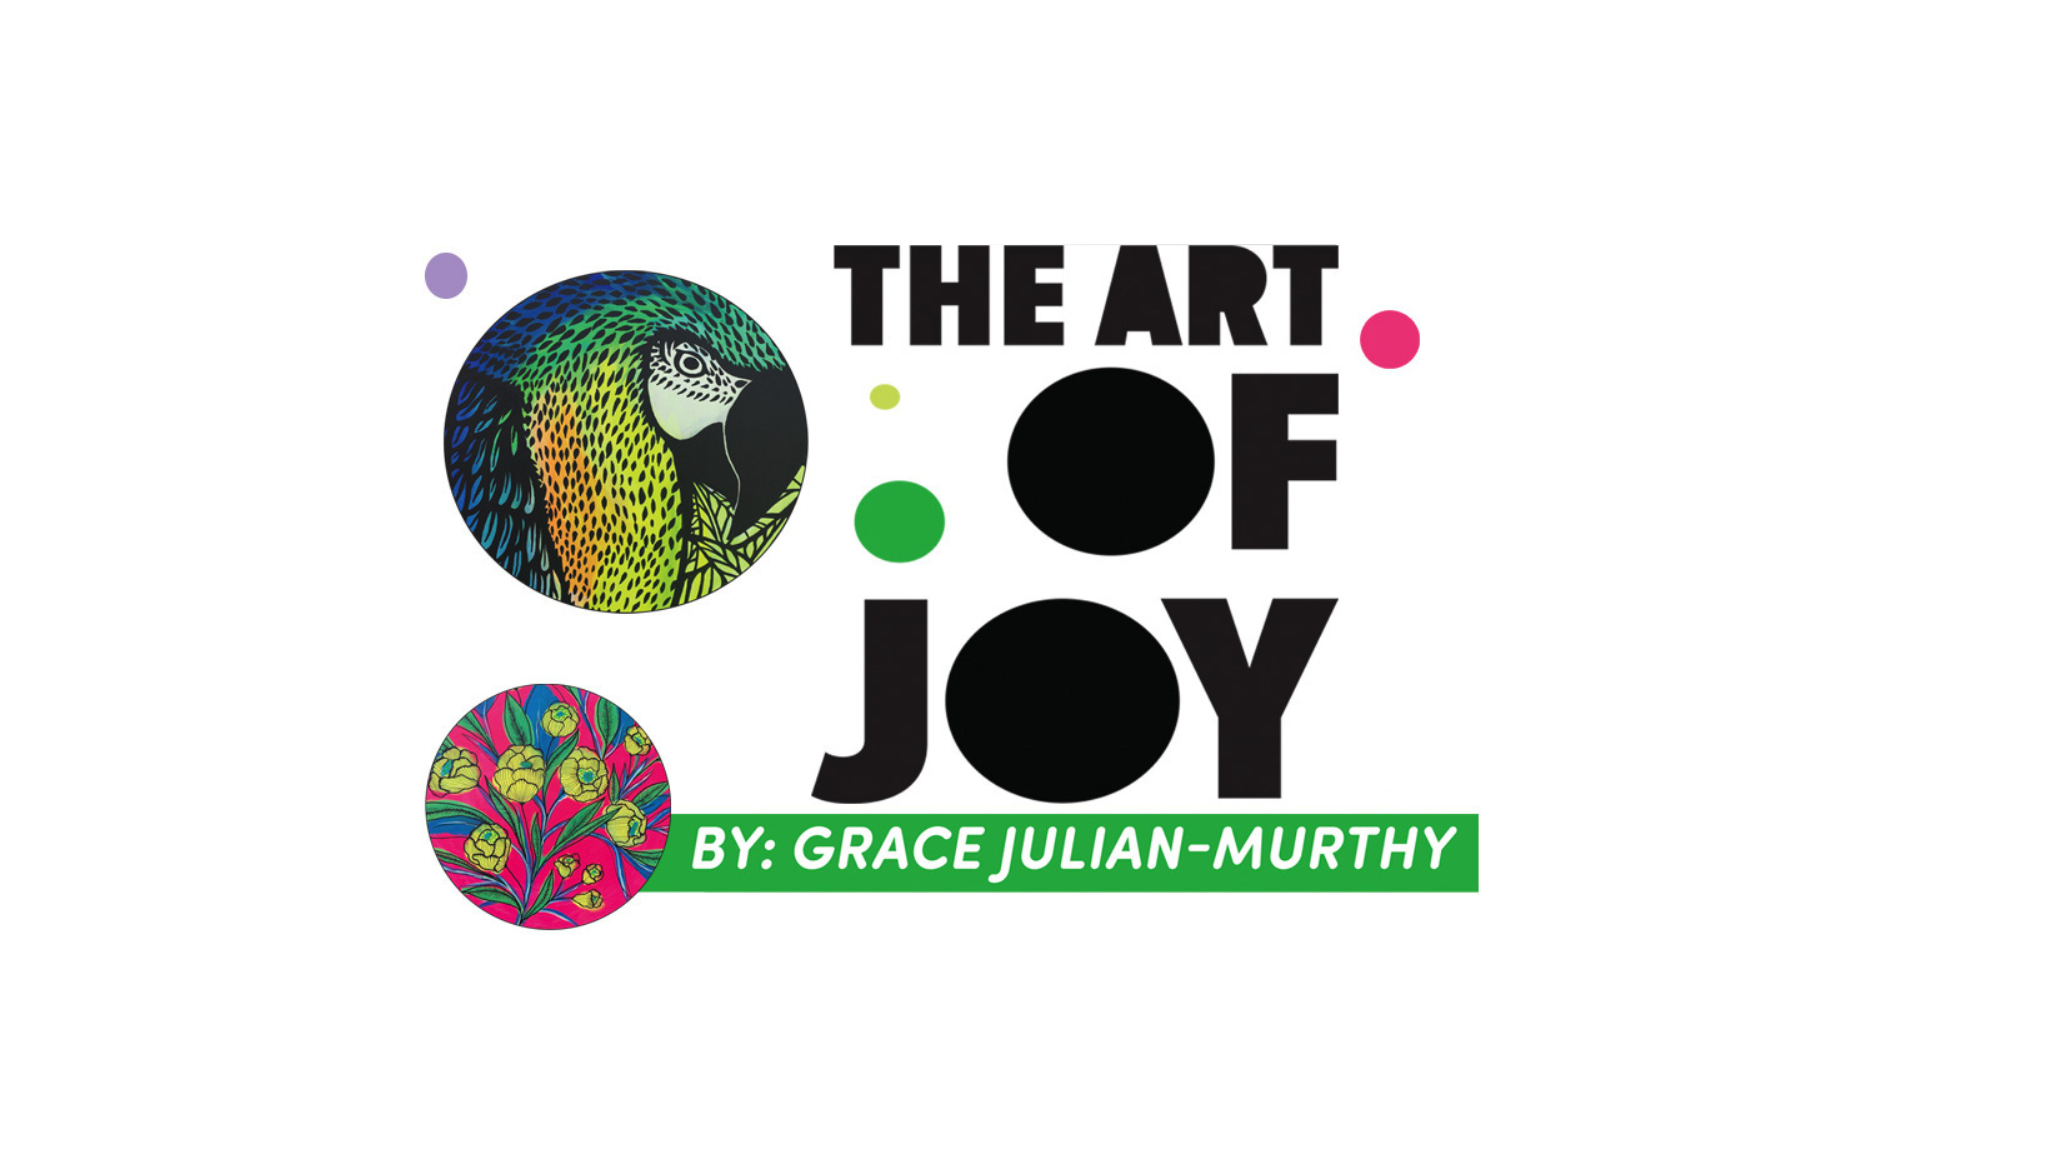 Exhibition the Art of Joy